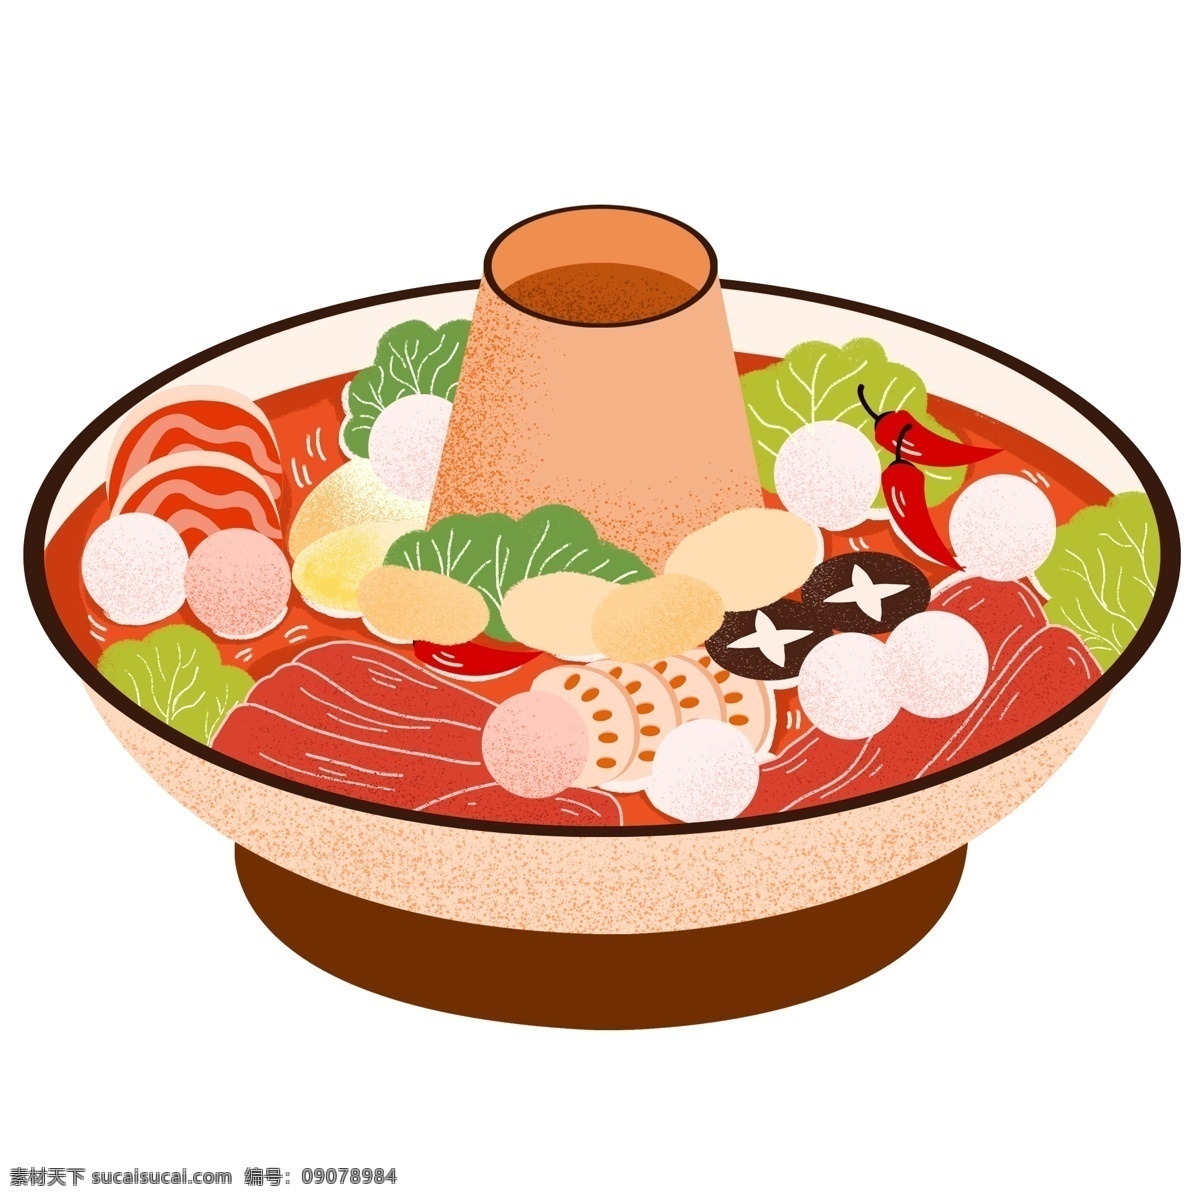 美味 火锅 卡通 插画 手绘 美食 食物